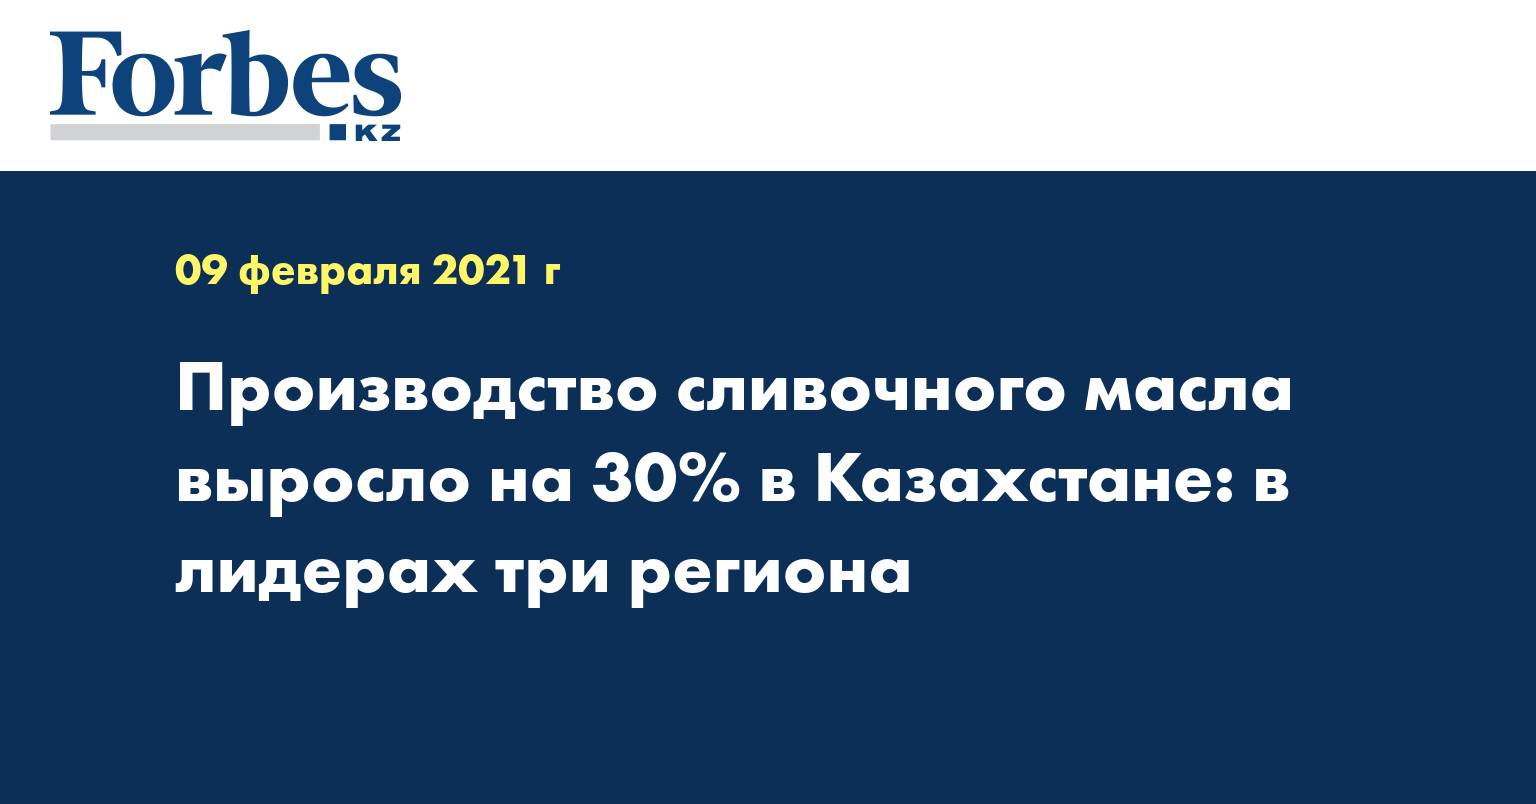 Производство сливочного масла выросло на 30% в Казахстане: в лидерах три региона